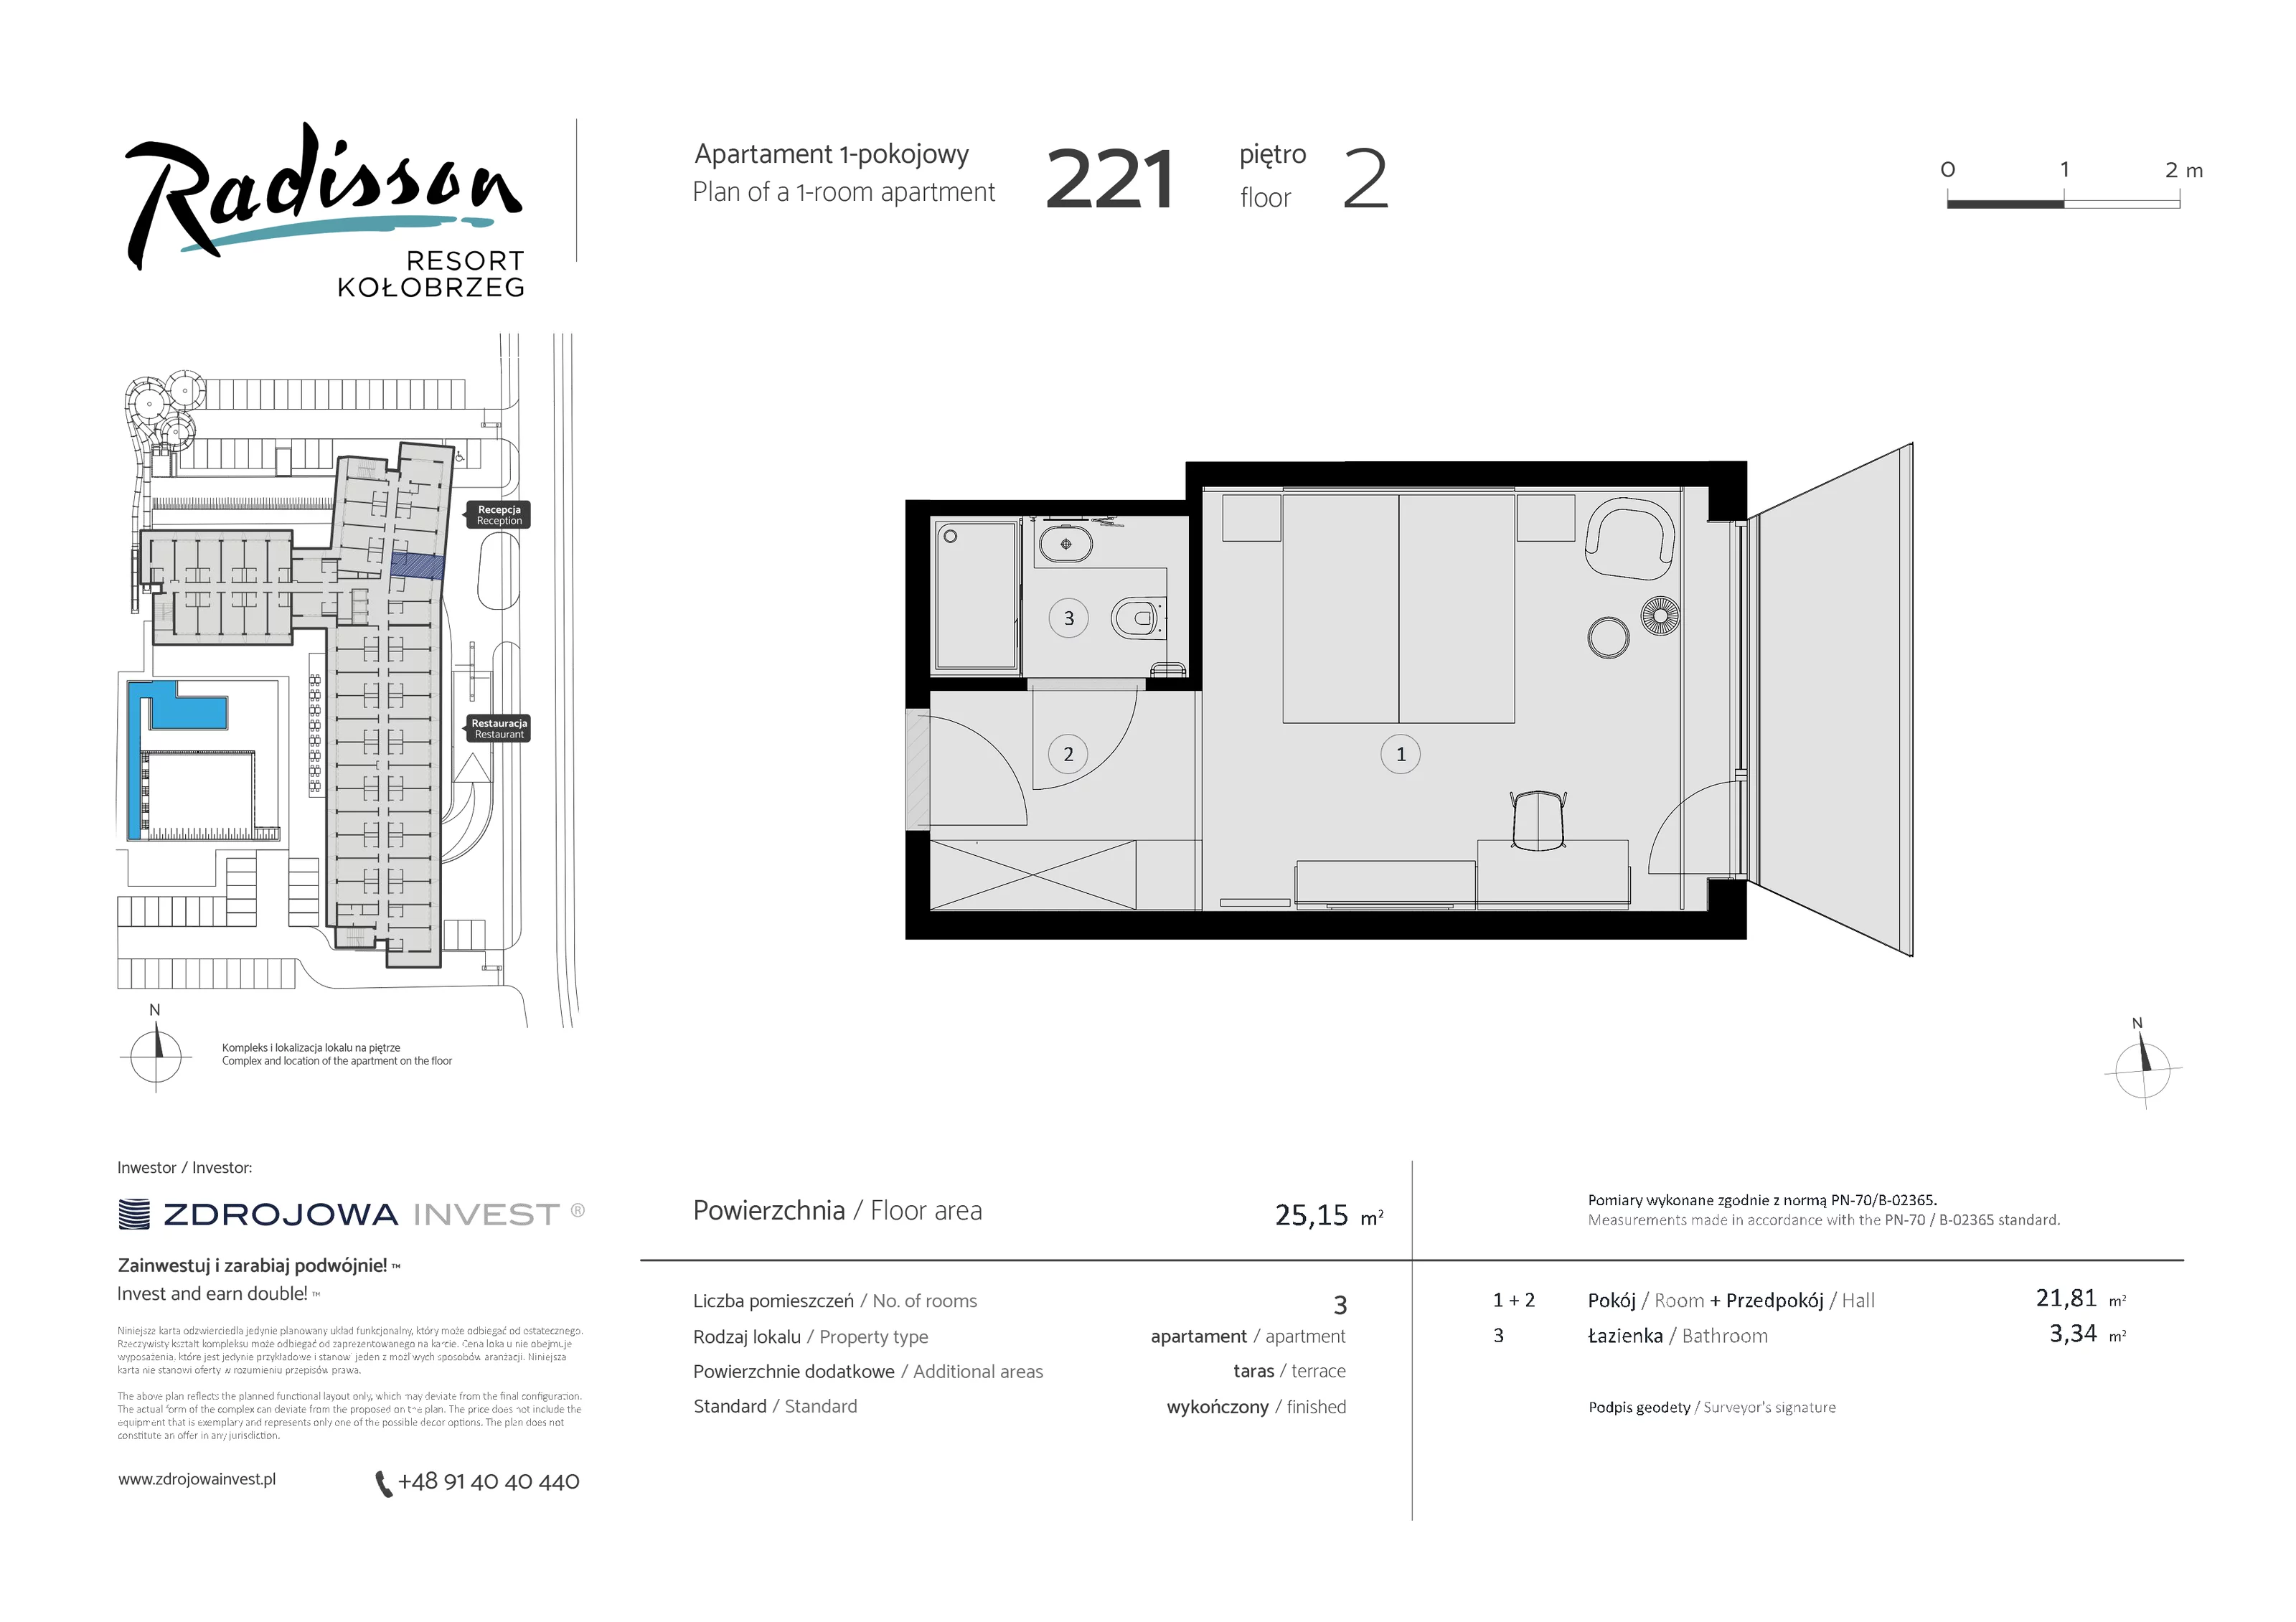 Apartament inwestycyjny 25,15 m², piętro 2, oferta nr 221, Radisson Resort Kołobrzeg, Kołobrzeg, ul. Morawskiego 10